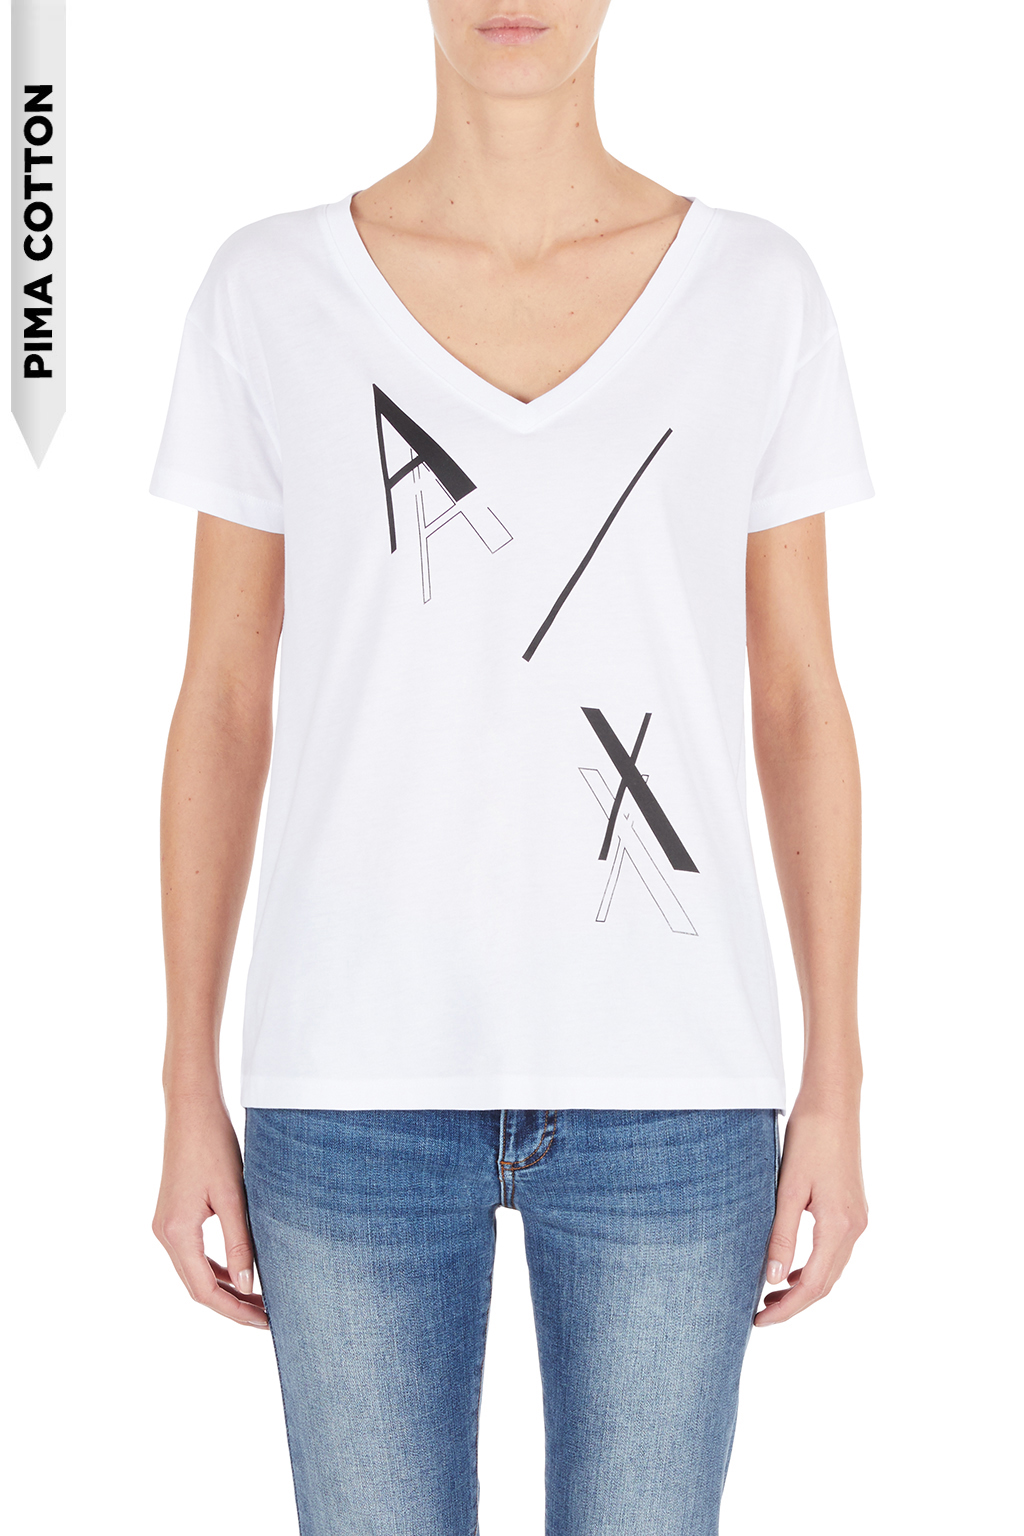 ARMANI EXCHANGE  6KYTAT YJ16Z Damen T-Shirt OPTIC WHITE 1000